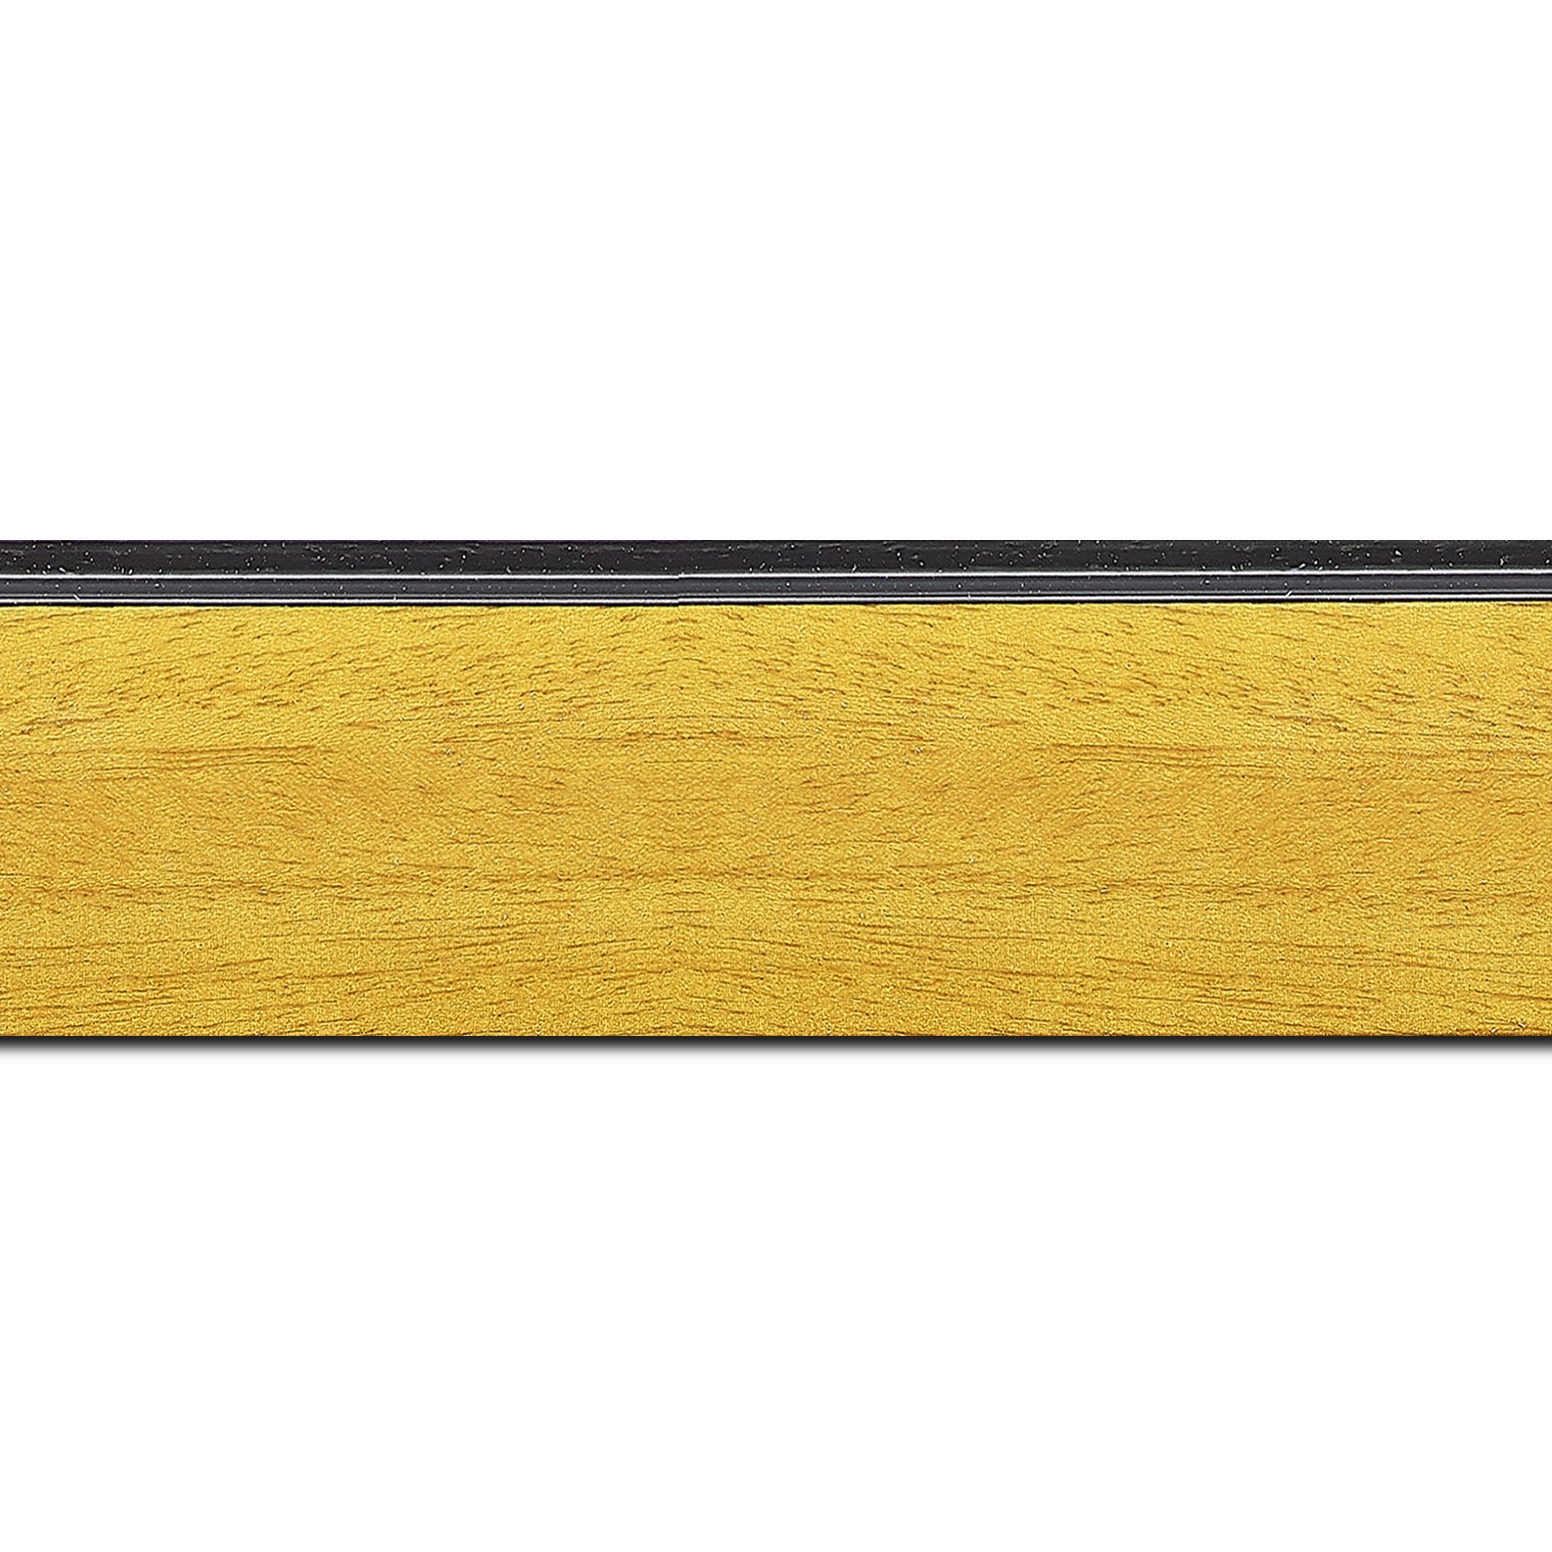 Pack par 12m, bois profil en pente méplat largeur 4.8cm couleur jaune tournesol satiné surligné par une gorge extérieure noire : originalité et élégance assurée (longueur baguette pouvant varier entre 2.40m et 3m selon arrivage des bois)